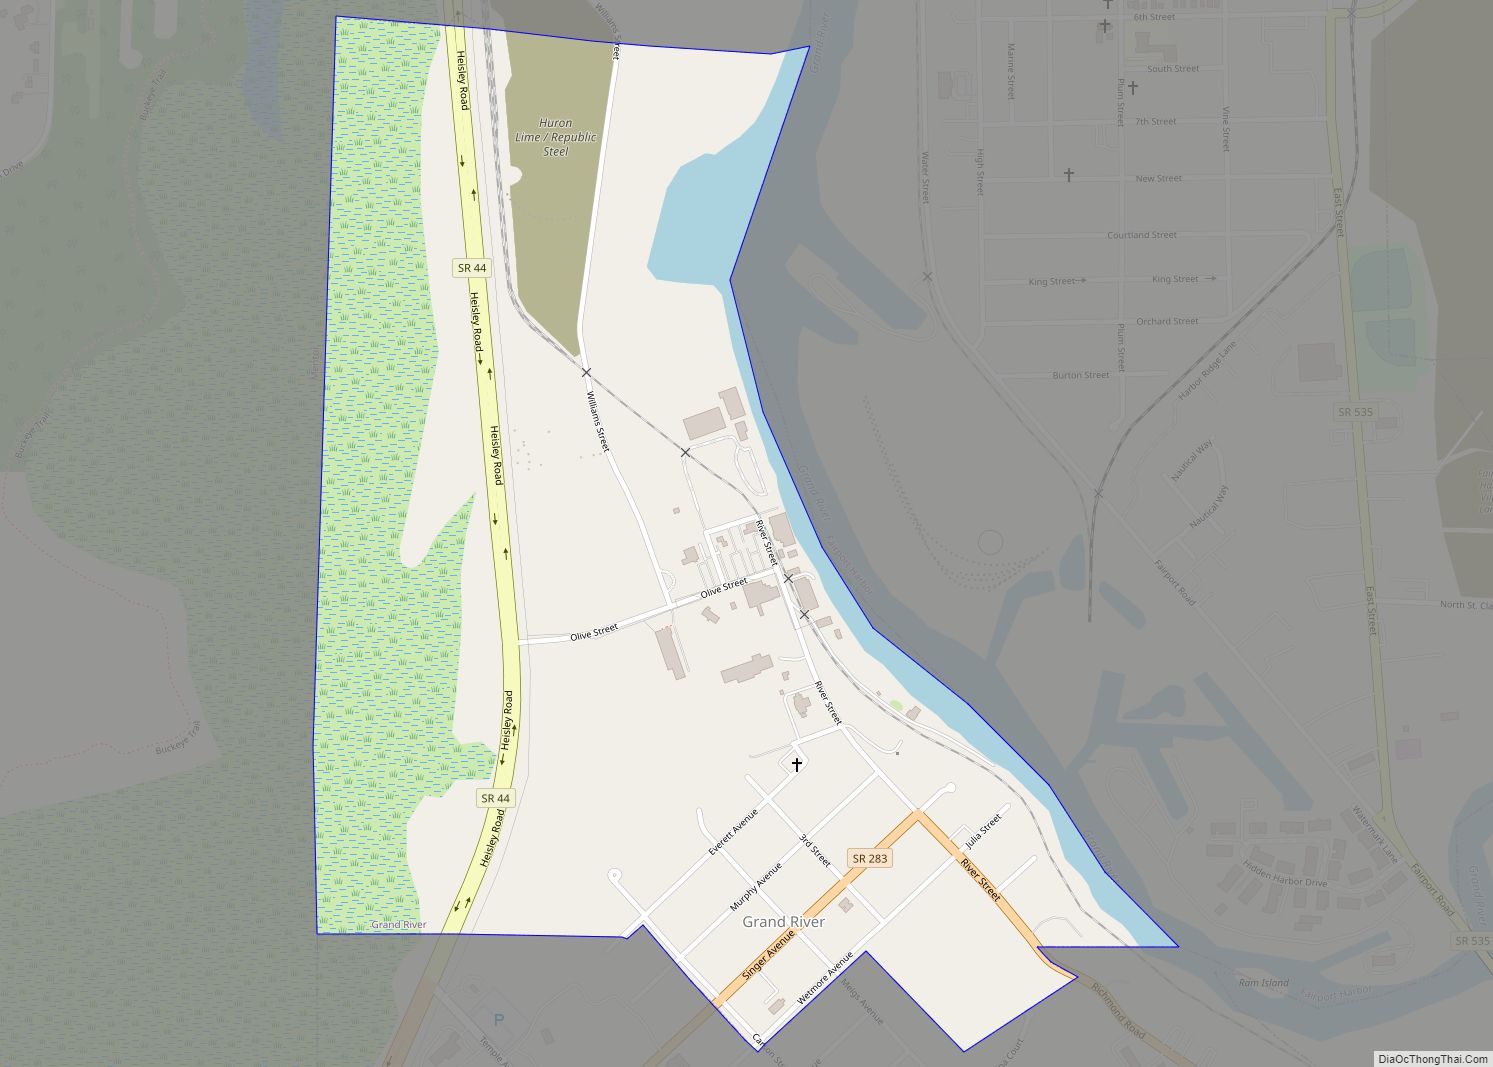 Map of Grand River village, Ohio